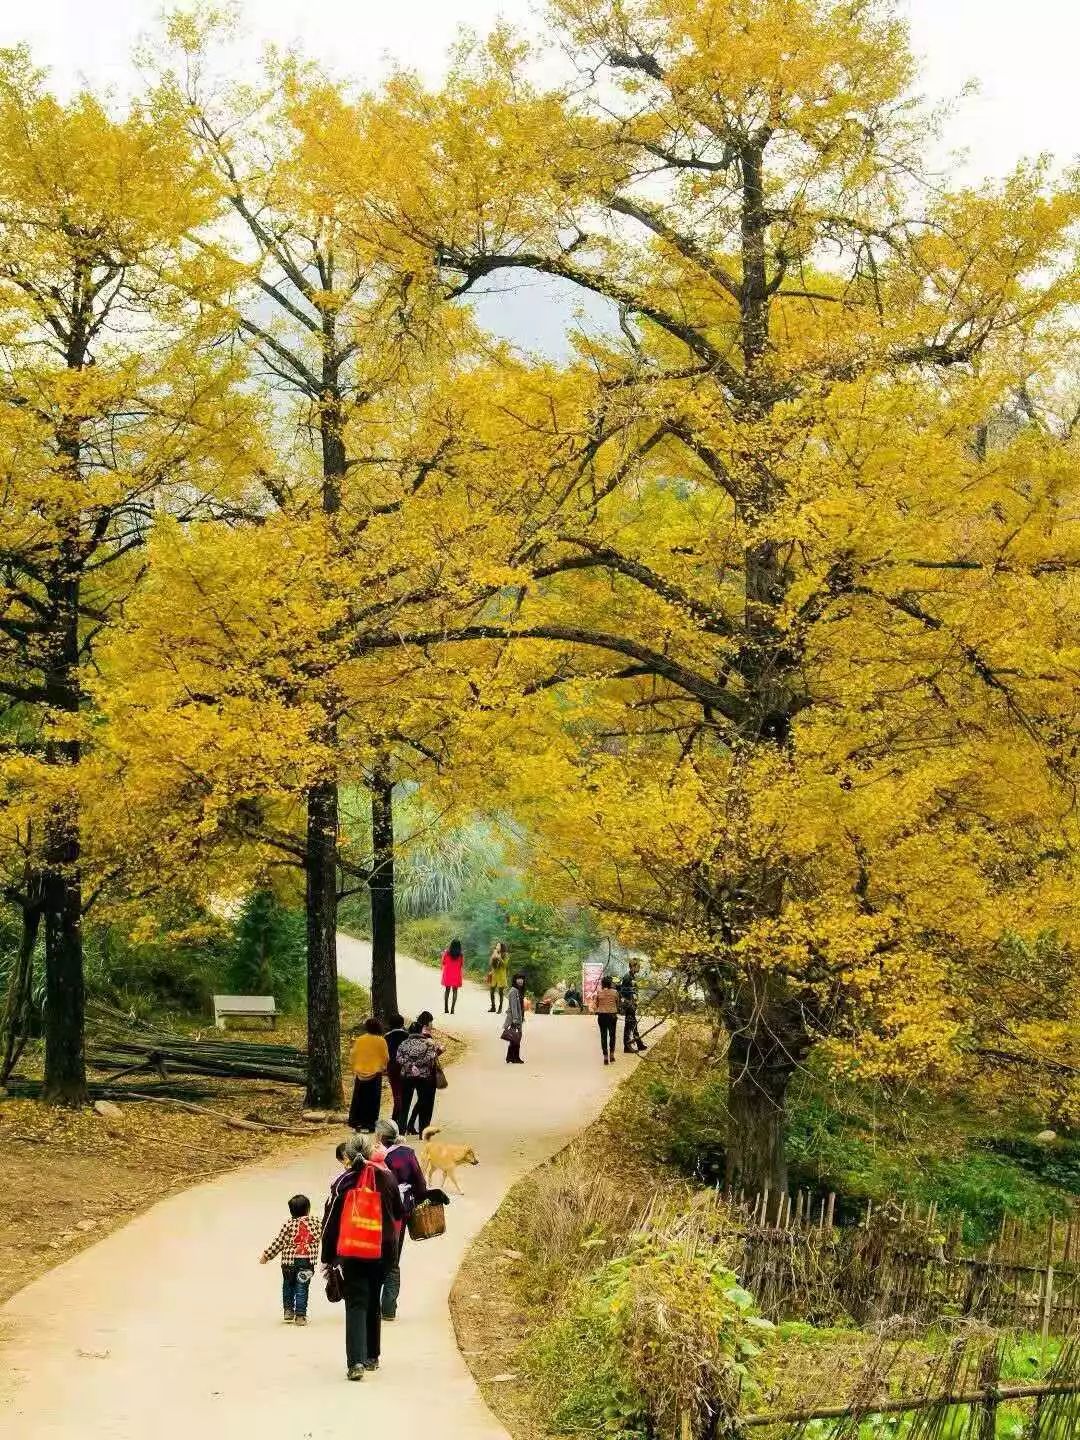 桐子坳村位于永州双牌县,由于这里生长着大片银杏,每到秋季就吸引着